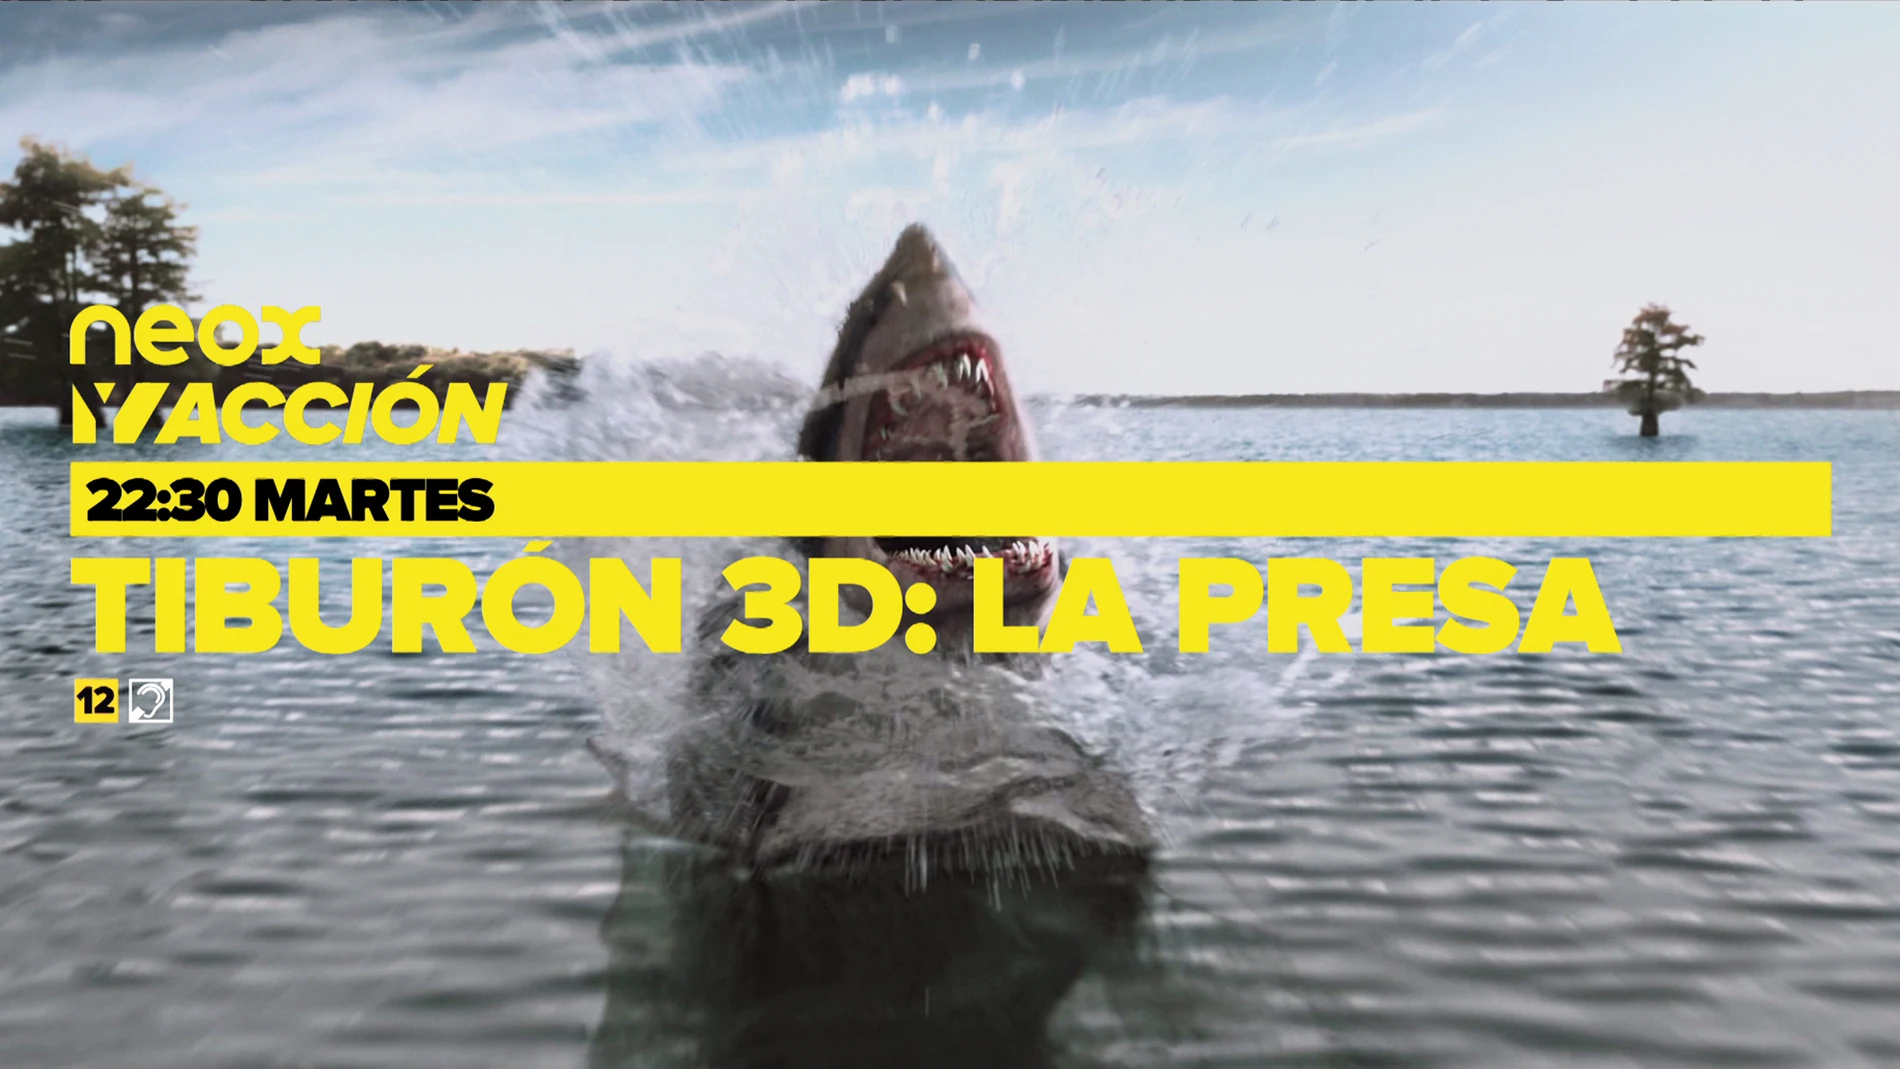 Neox y Acción ofrece una noche de cine impactante con la emisión de 'Tiburón 3D: La presa' y 'El ataque de los tiburones'